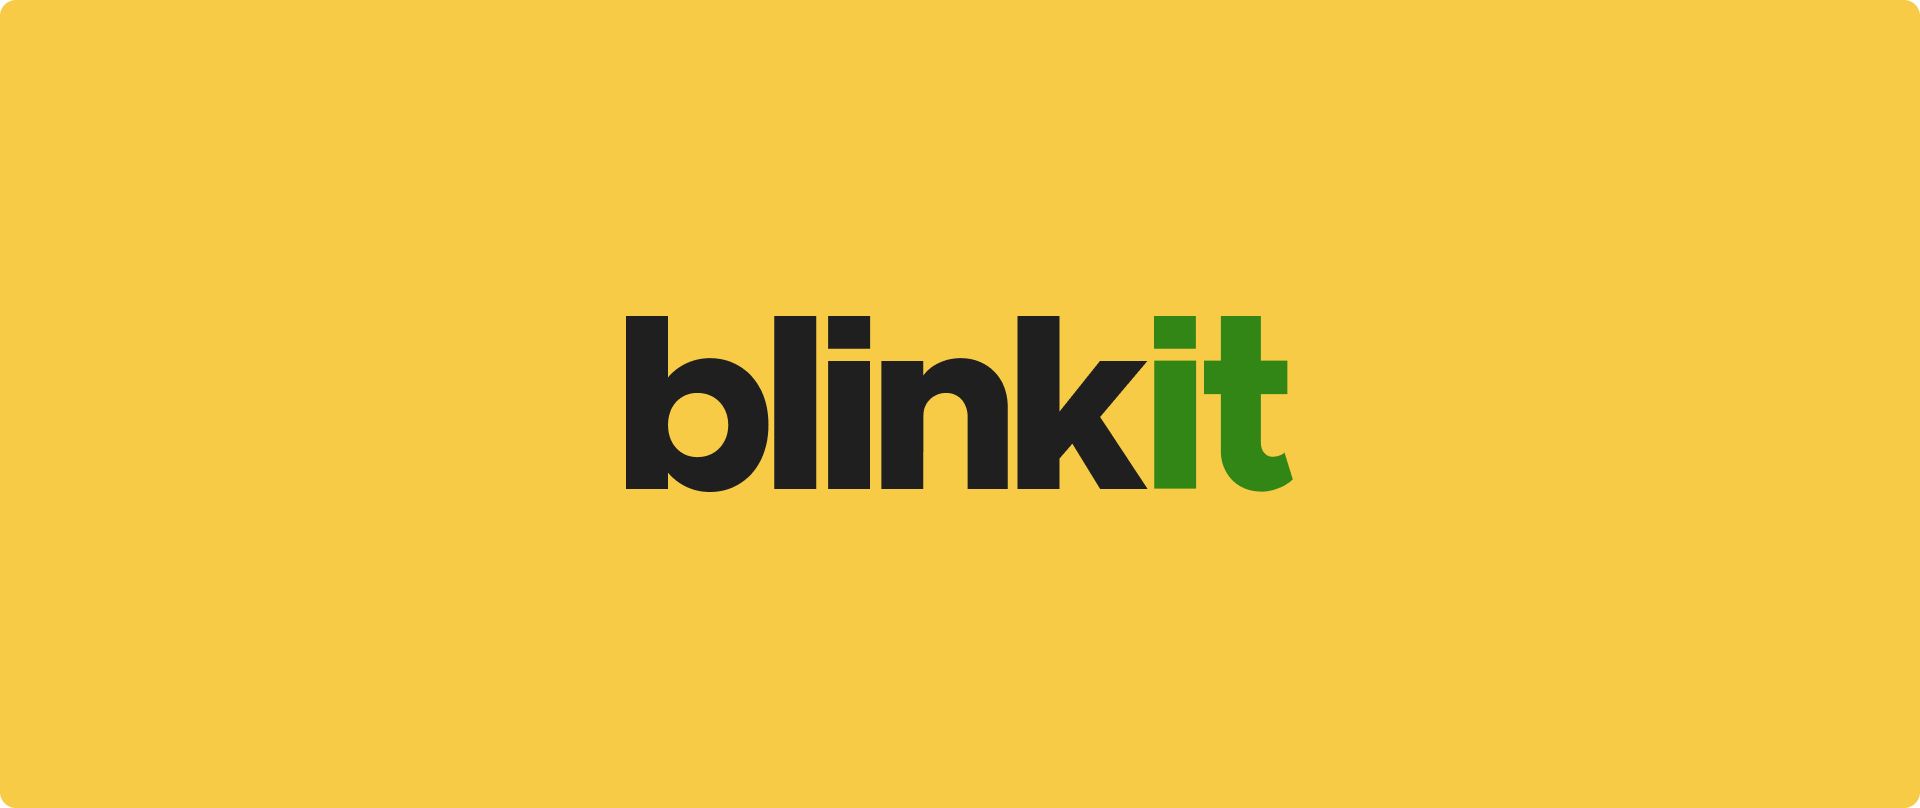 Blinkit이 작동하지 않나요? 문제 해결 팁을 살펴보고 원활한 식료품 쇼핑을 위한 최고의 Blinkit 대안을 찾아보세요. 오늘 다시 정상으로 돌아가세요!